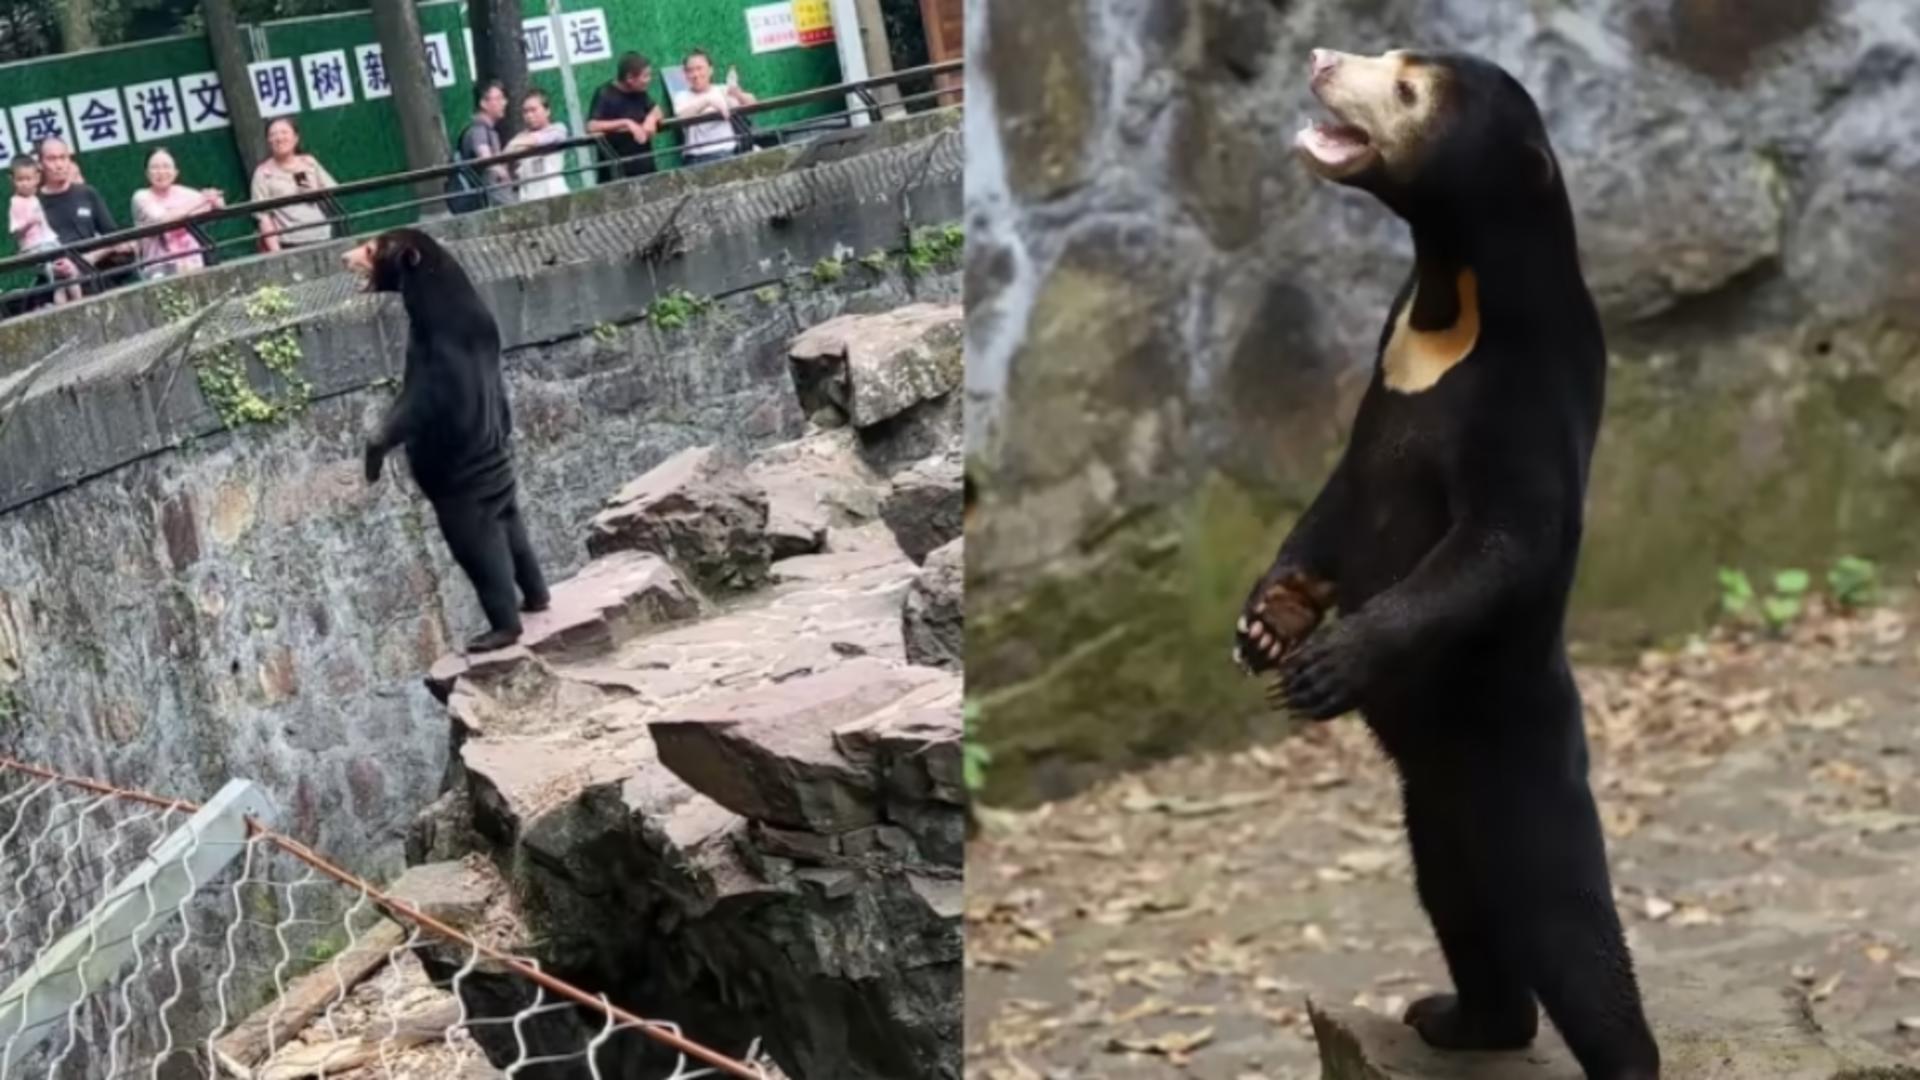 Ursul cu chip uman a încins rețelele sociale: Imaginile în care stă ca un om au devenit virale - 20.000 de oameni merg în fiecare zi să-l vadă